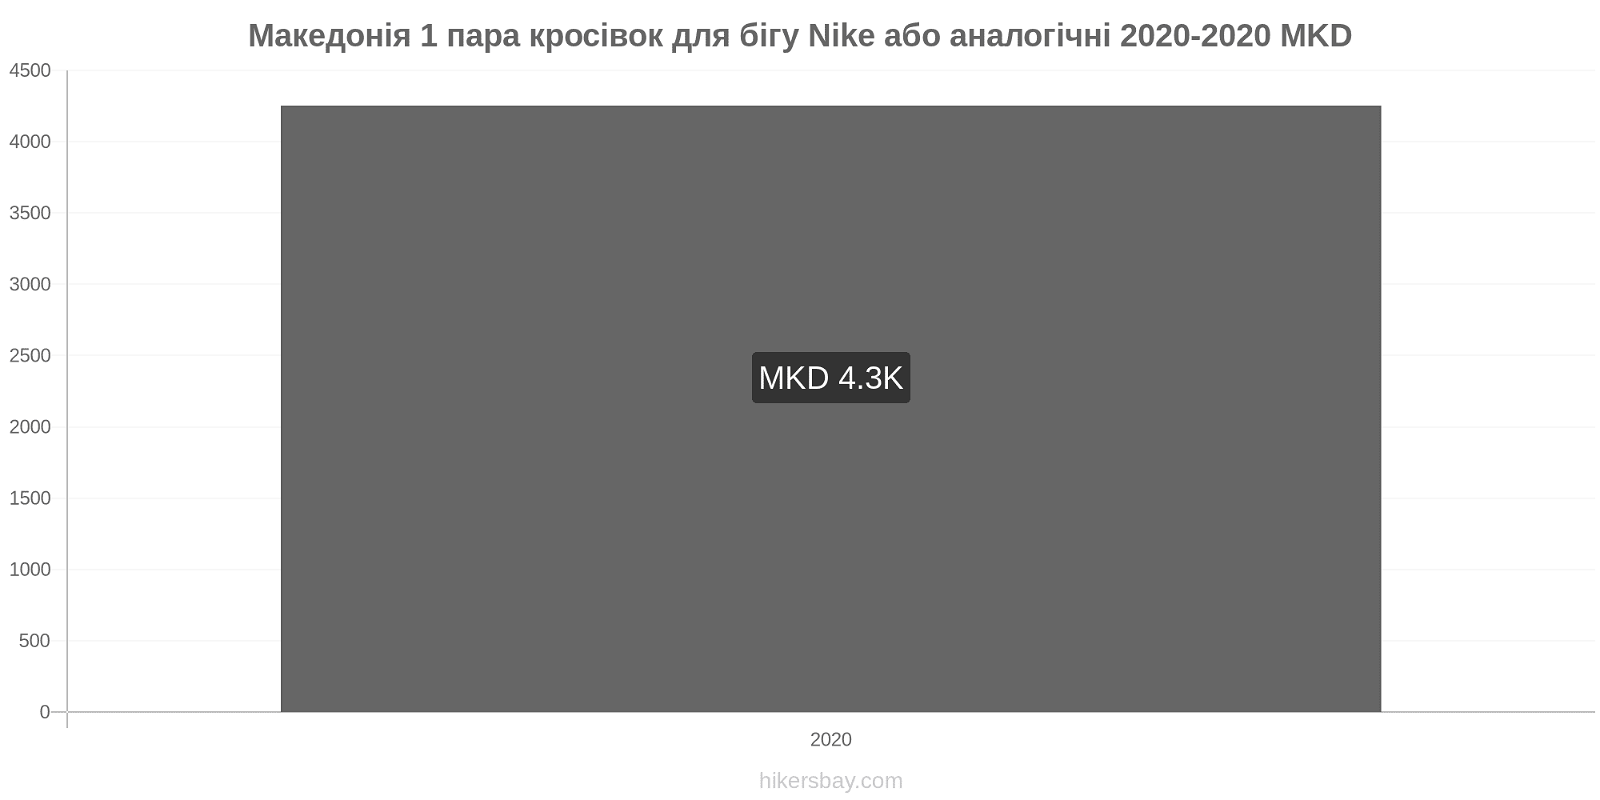 Македонія зміни цін 1 пара кросівок для бігу Nike або аналогічні hikersbay.com